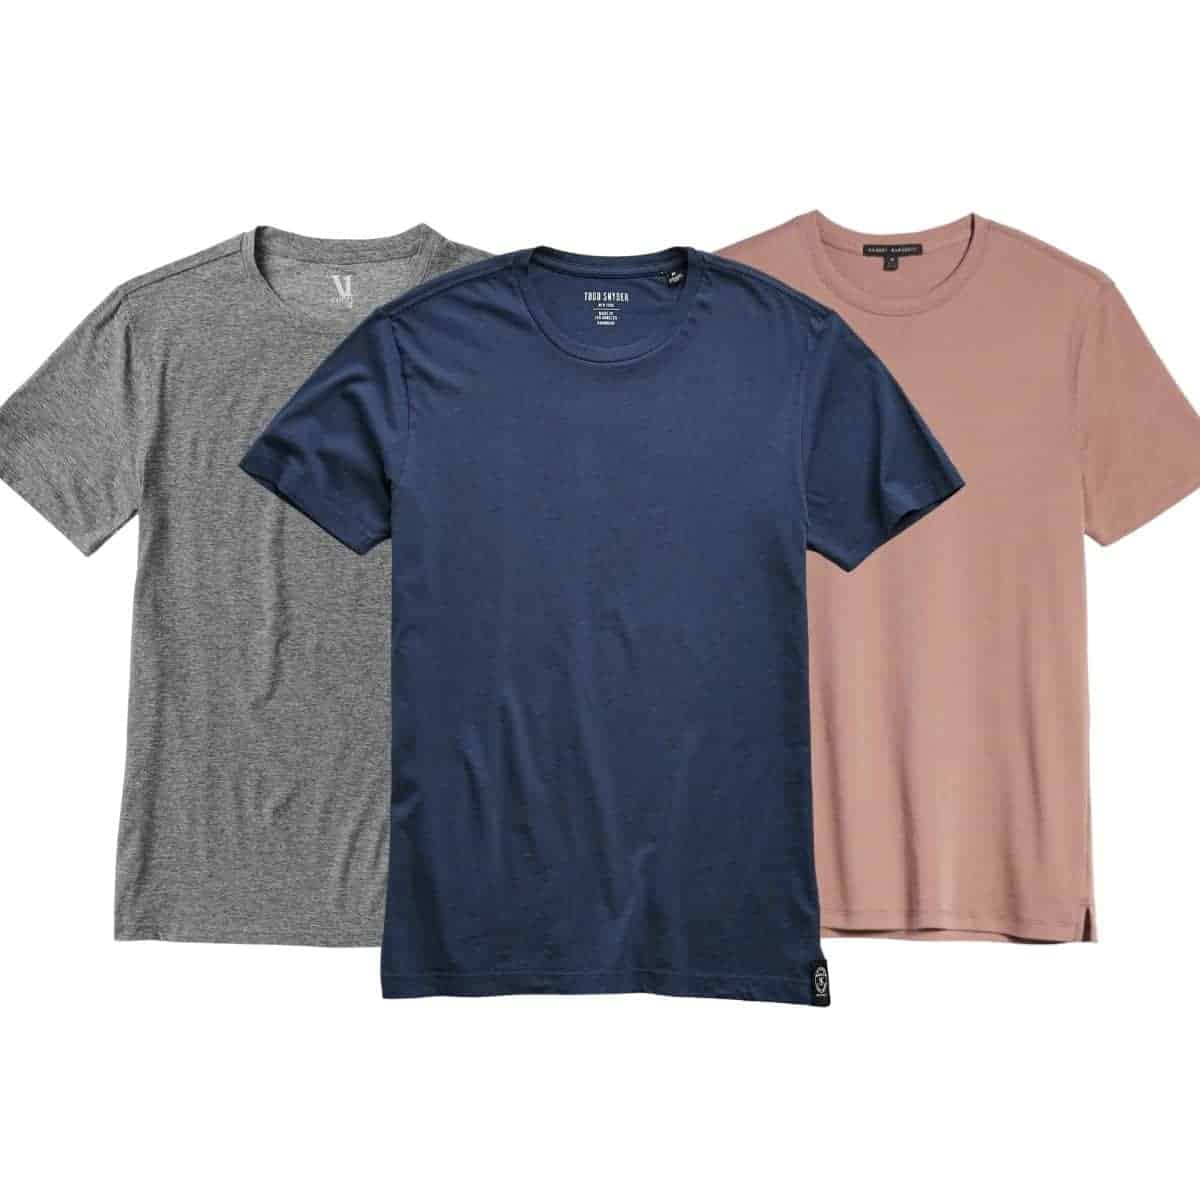 Three t-shirts.